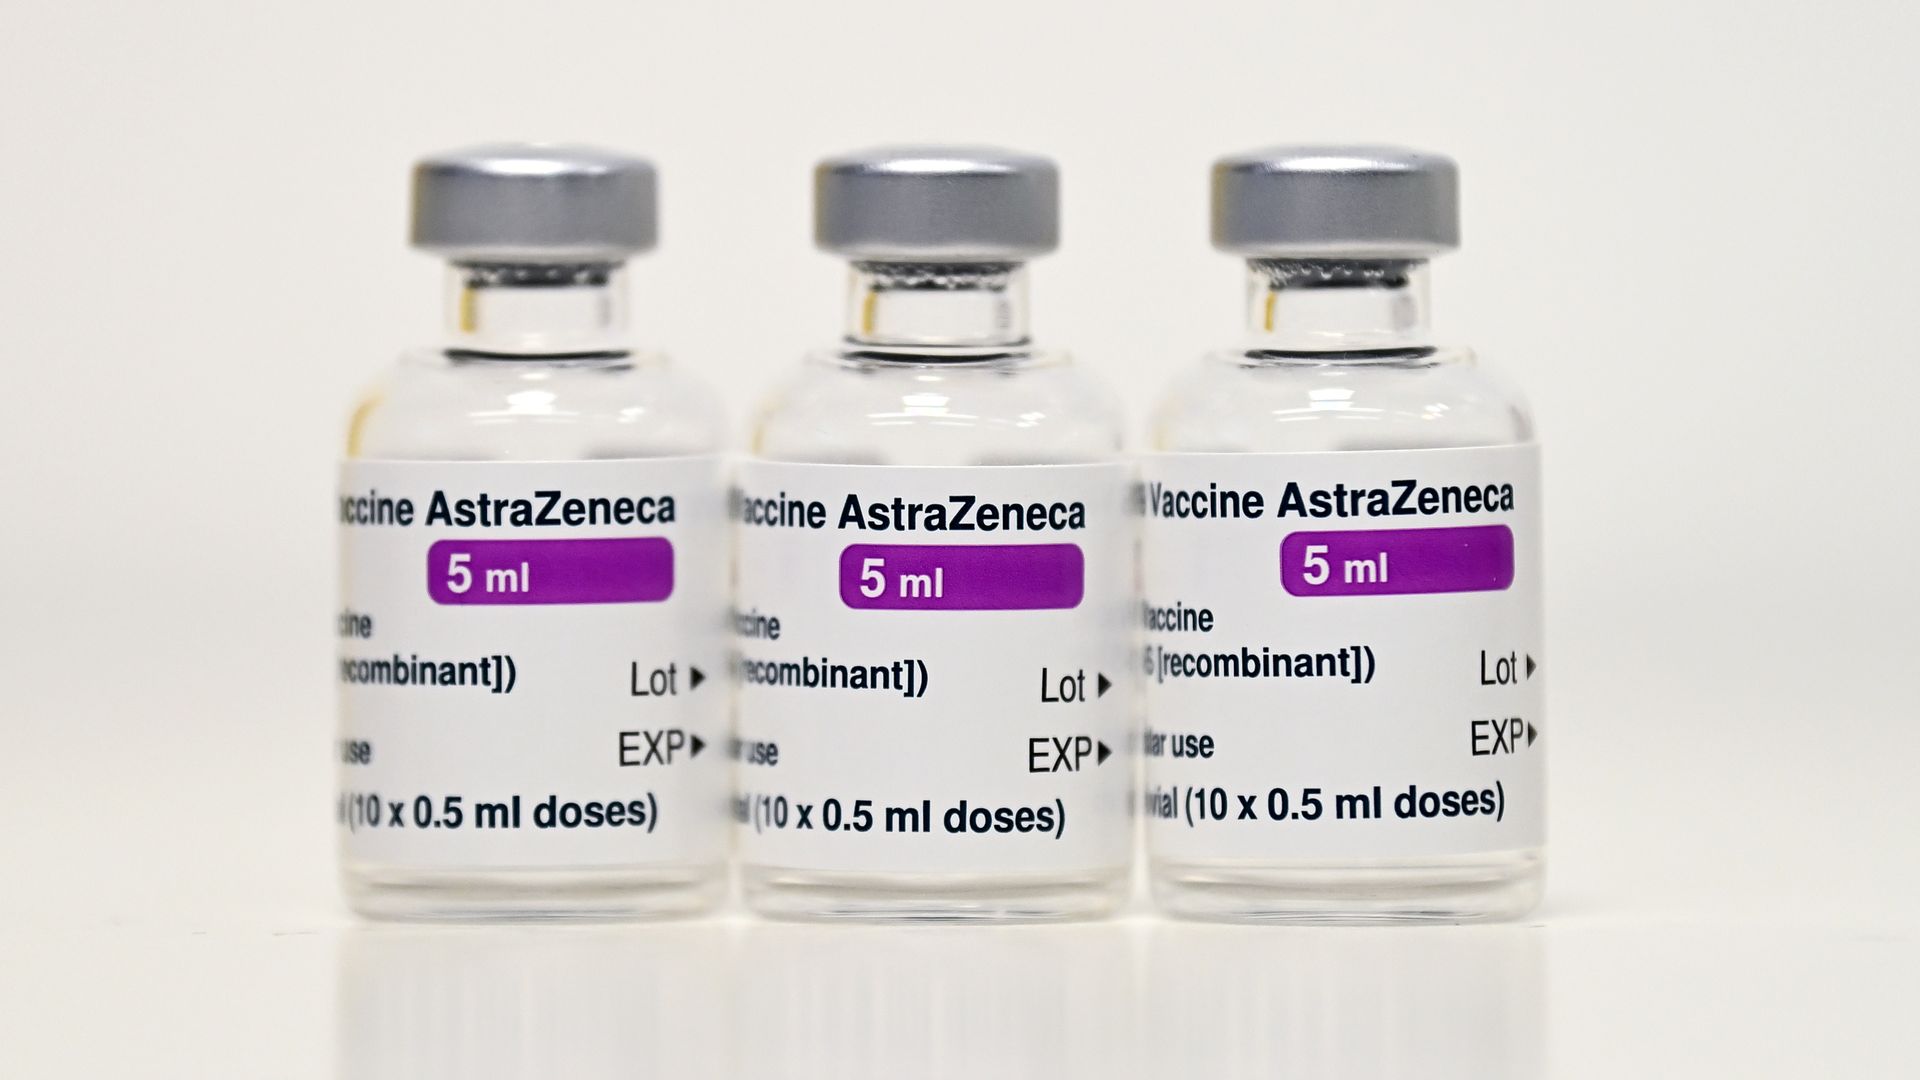 Picture of Oxford-AstraZeneca Covid-19 vaccine vials